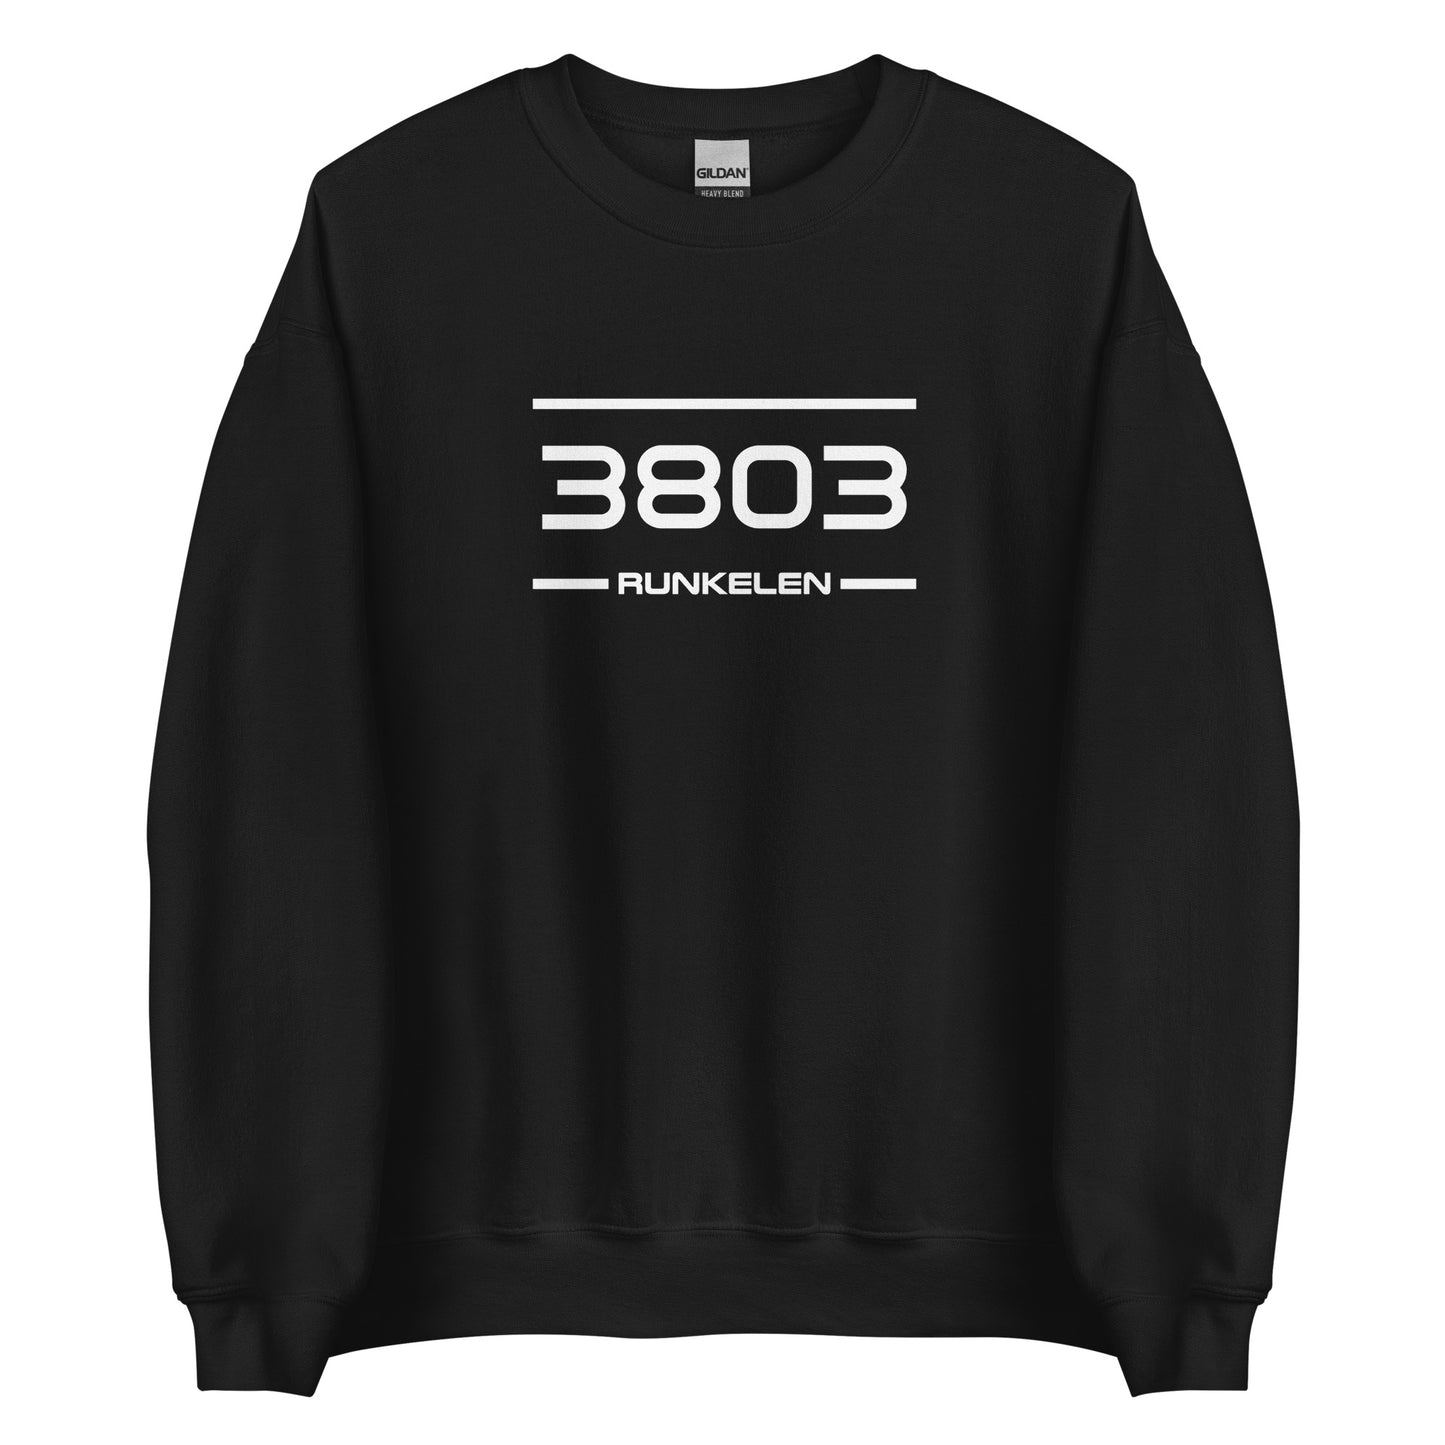 Sweater - 3803 - Runkelen (M/V)